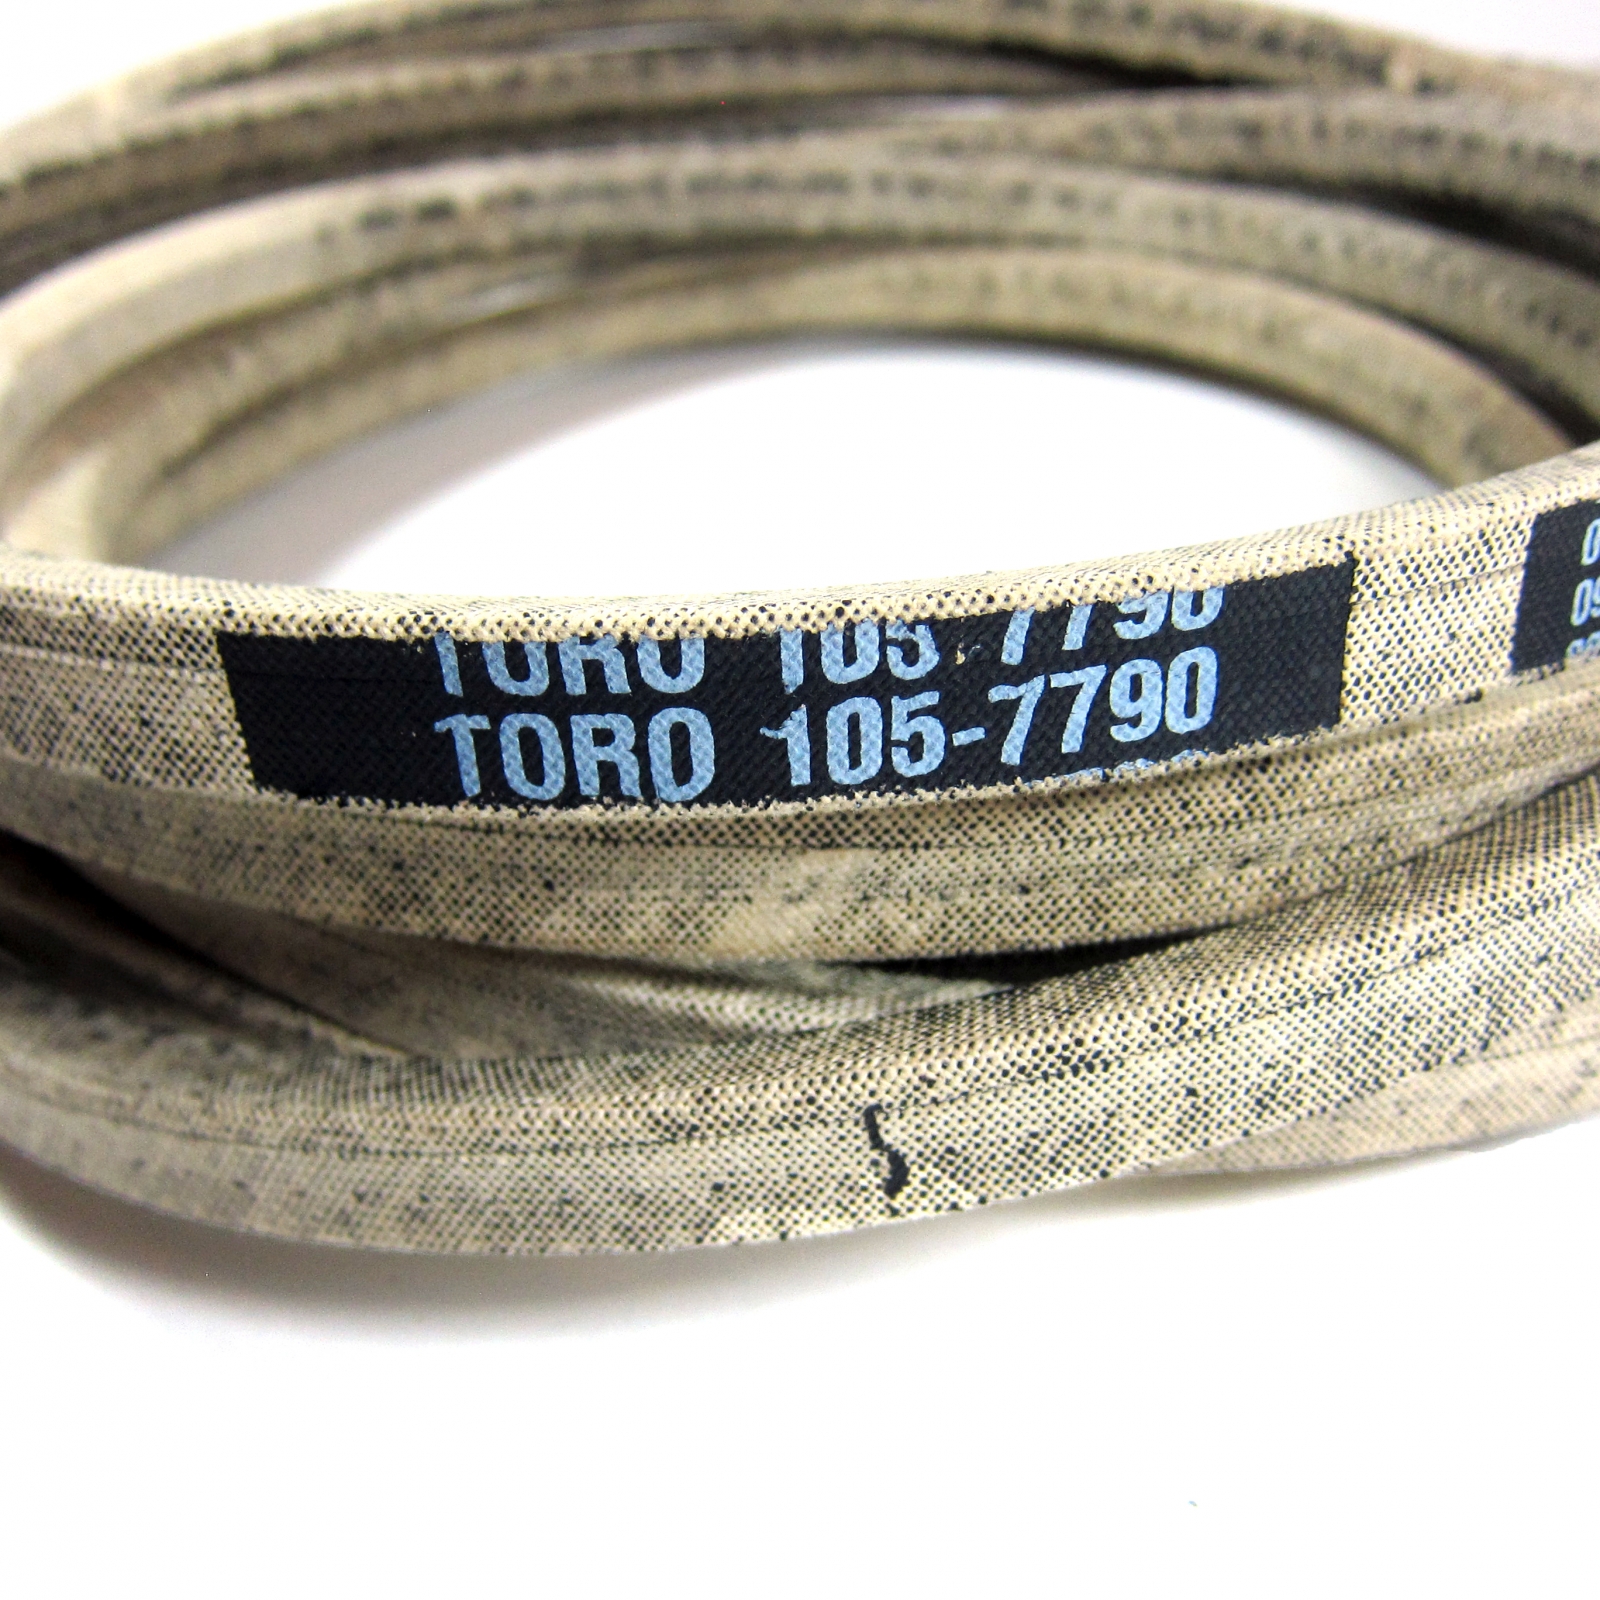 Toro Belt (105-7790)